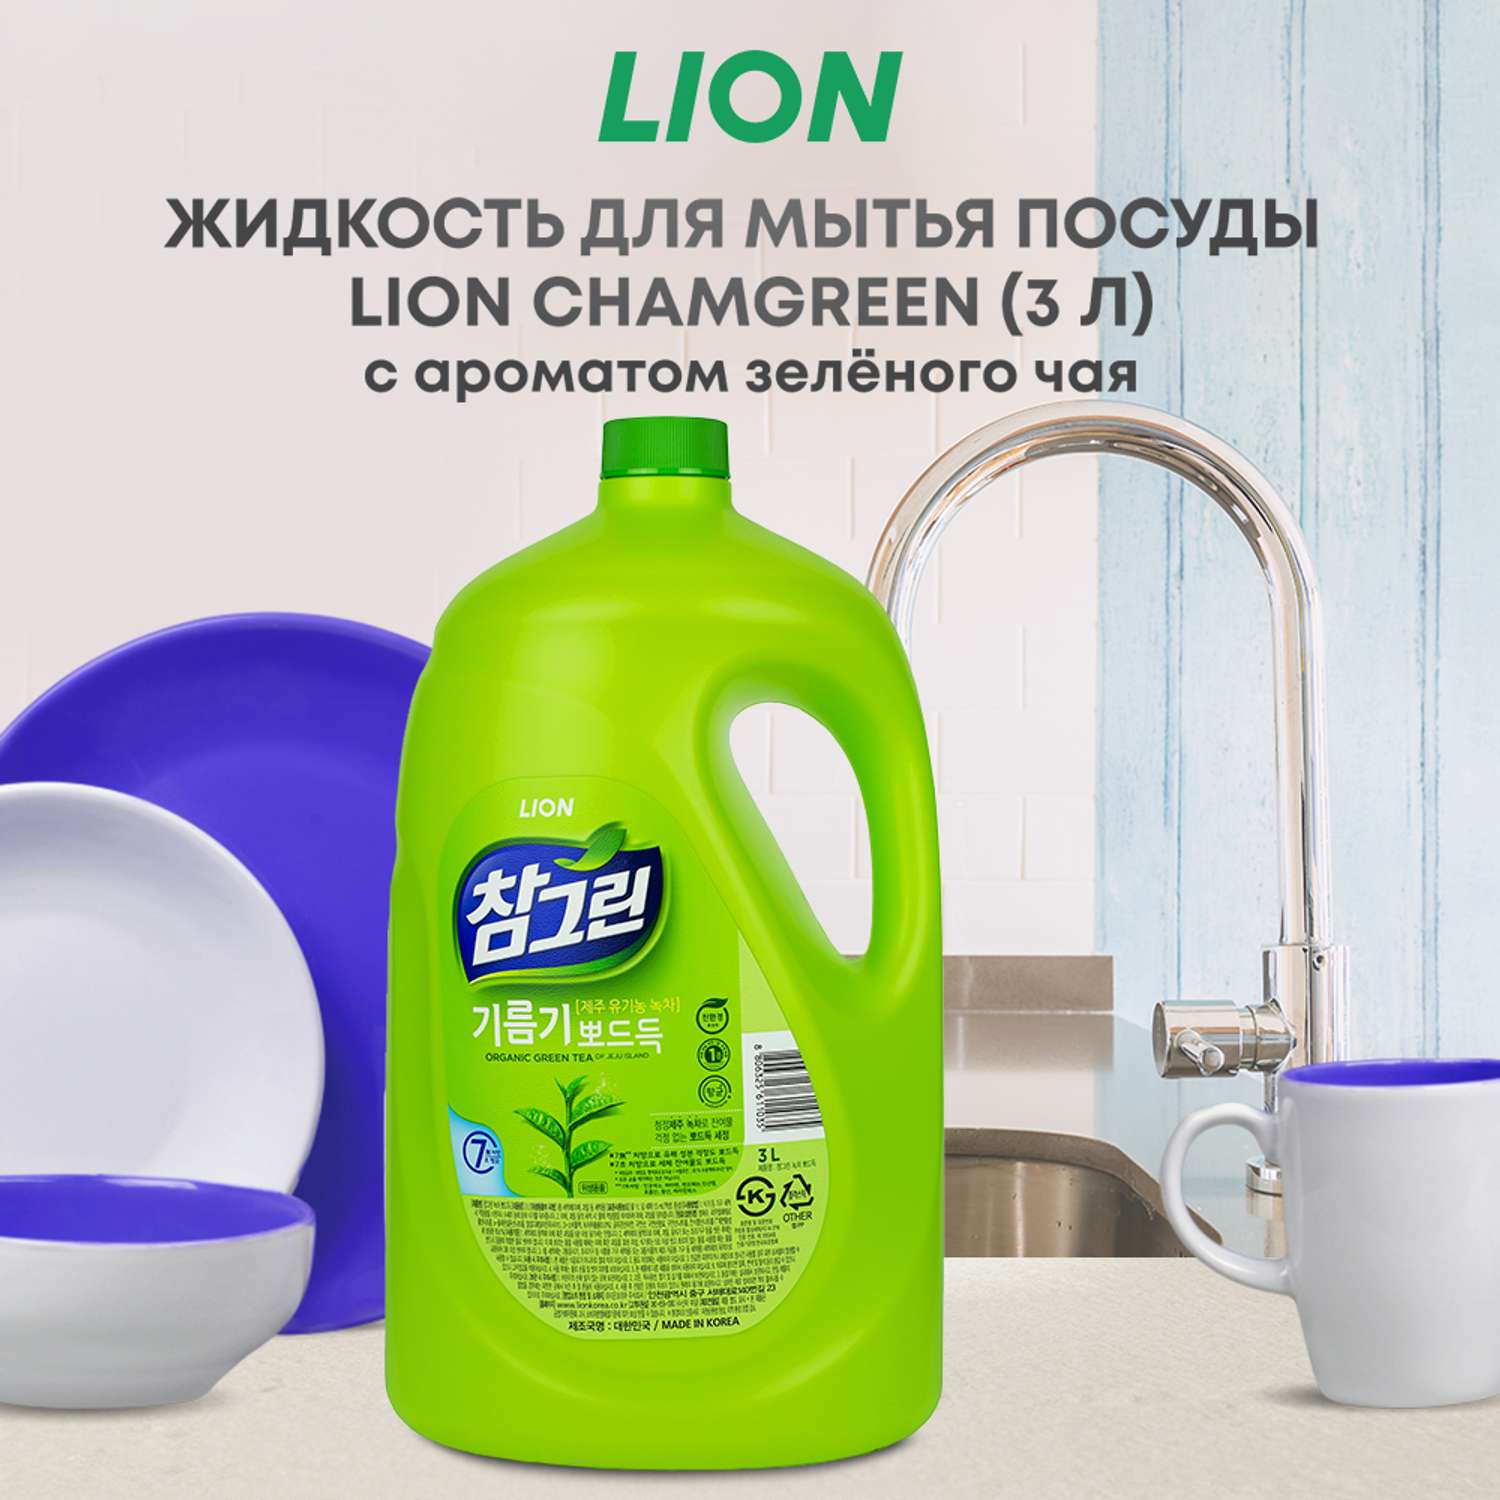 Средство для мытья посуды CJ LION Charmgreen bottle овощей и фруктов зеленый чай 3.1 кг - фото 1